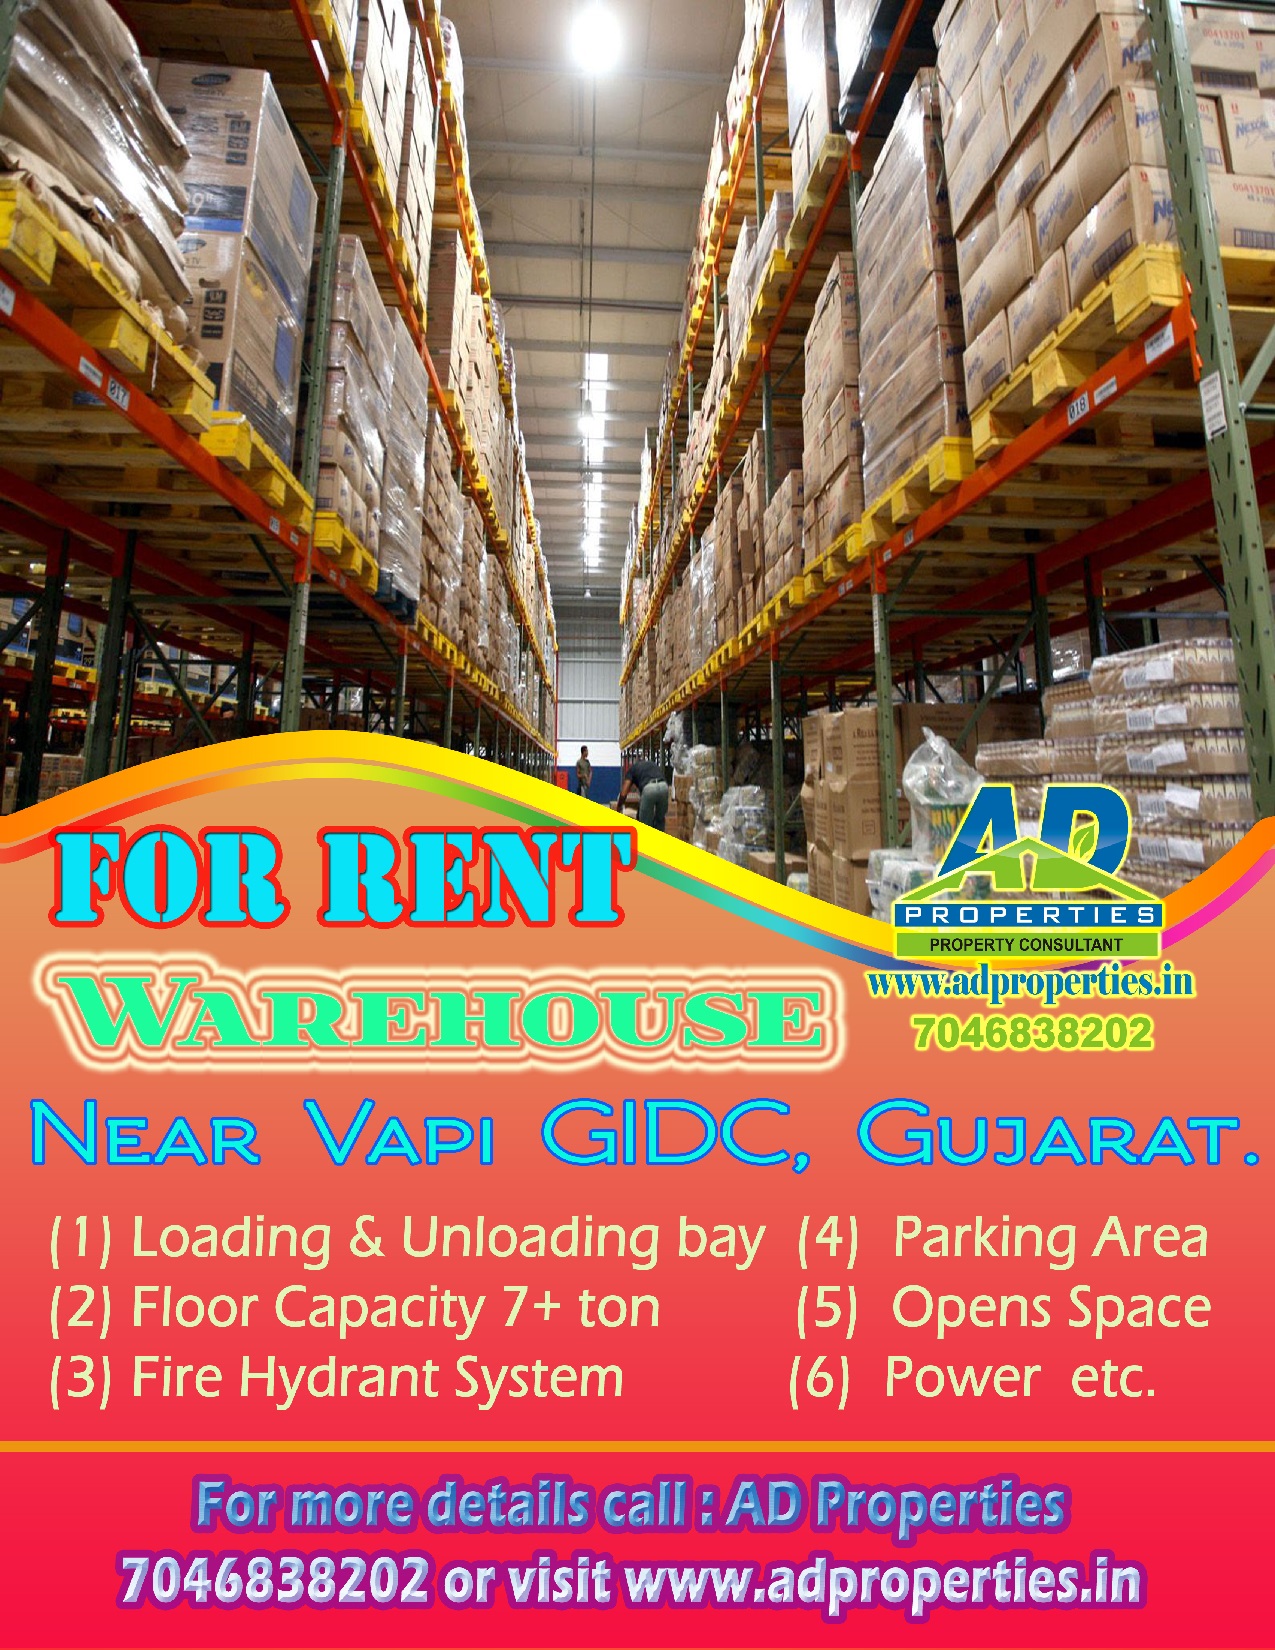 Warehouse for RENT at Vapi GIDC